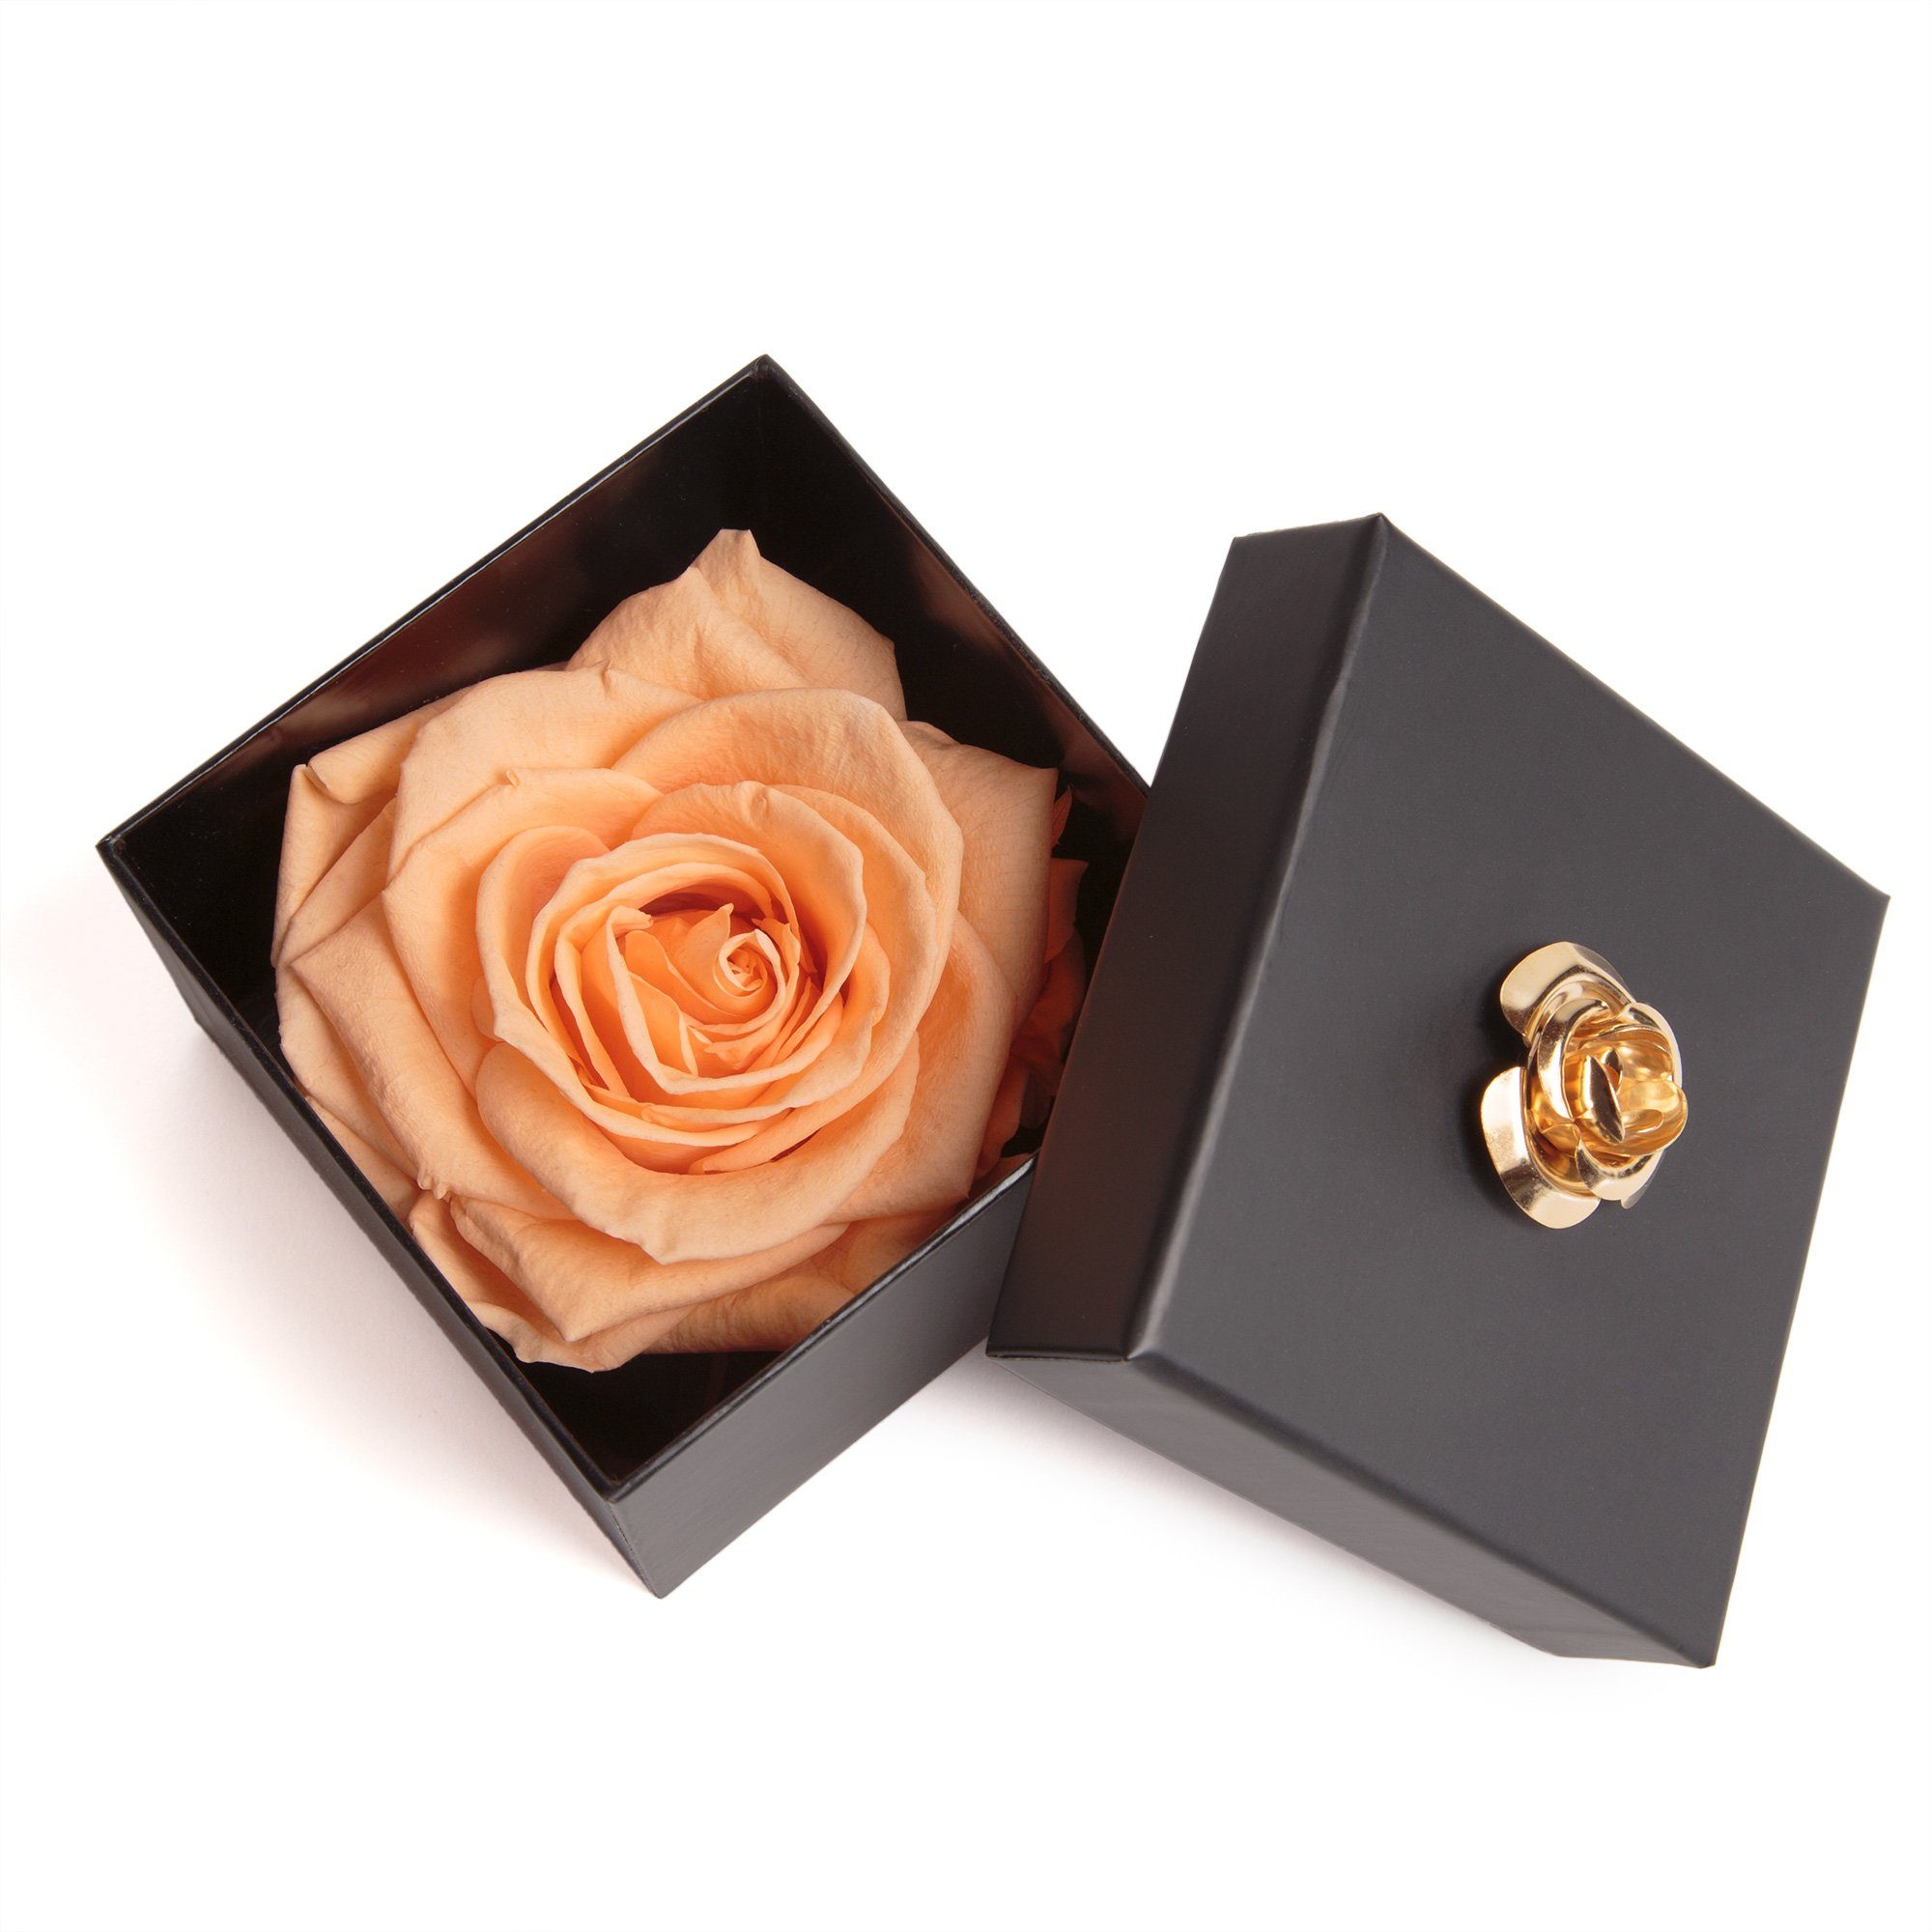 Kunstblume 1 Infinity Rose haltbar 3 Jahre Rose in Box mit Blumendeckel Rose, ROSEMARIE SCHULZ Heidelberg, Höhe 6.5 cm, Echte Rose haltbar bis zu 3 Jahre peach